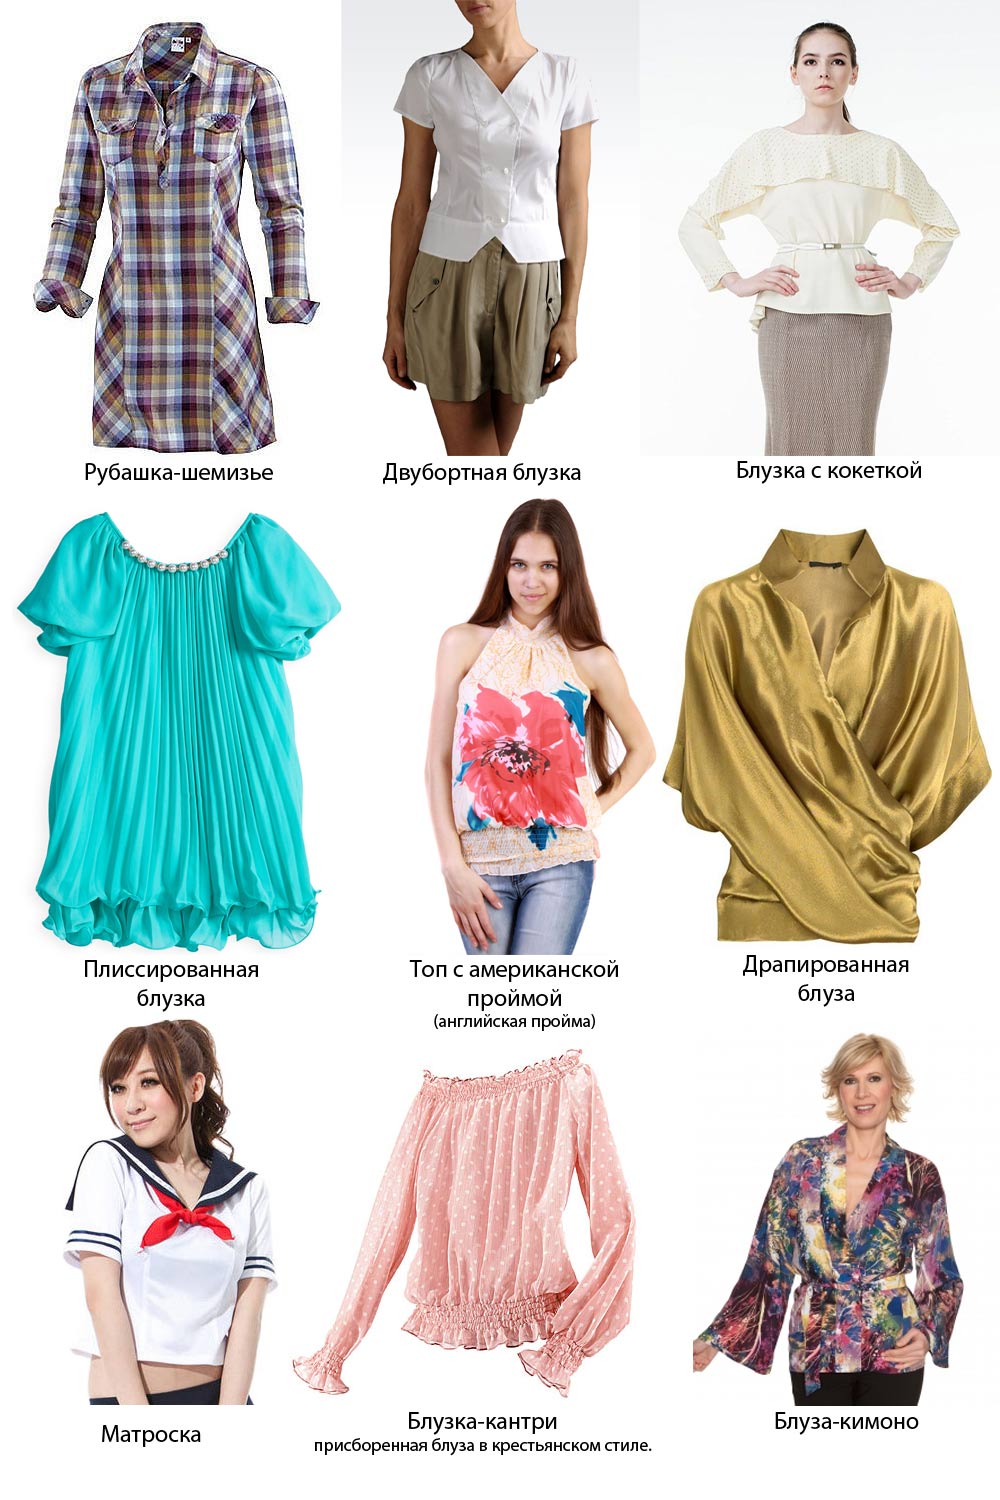 Название кофт фото. Типы блузок и их названия. Название женских кофточек. Названия блузок. Женская блуза название.